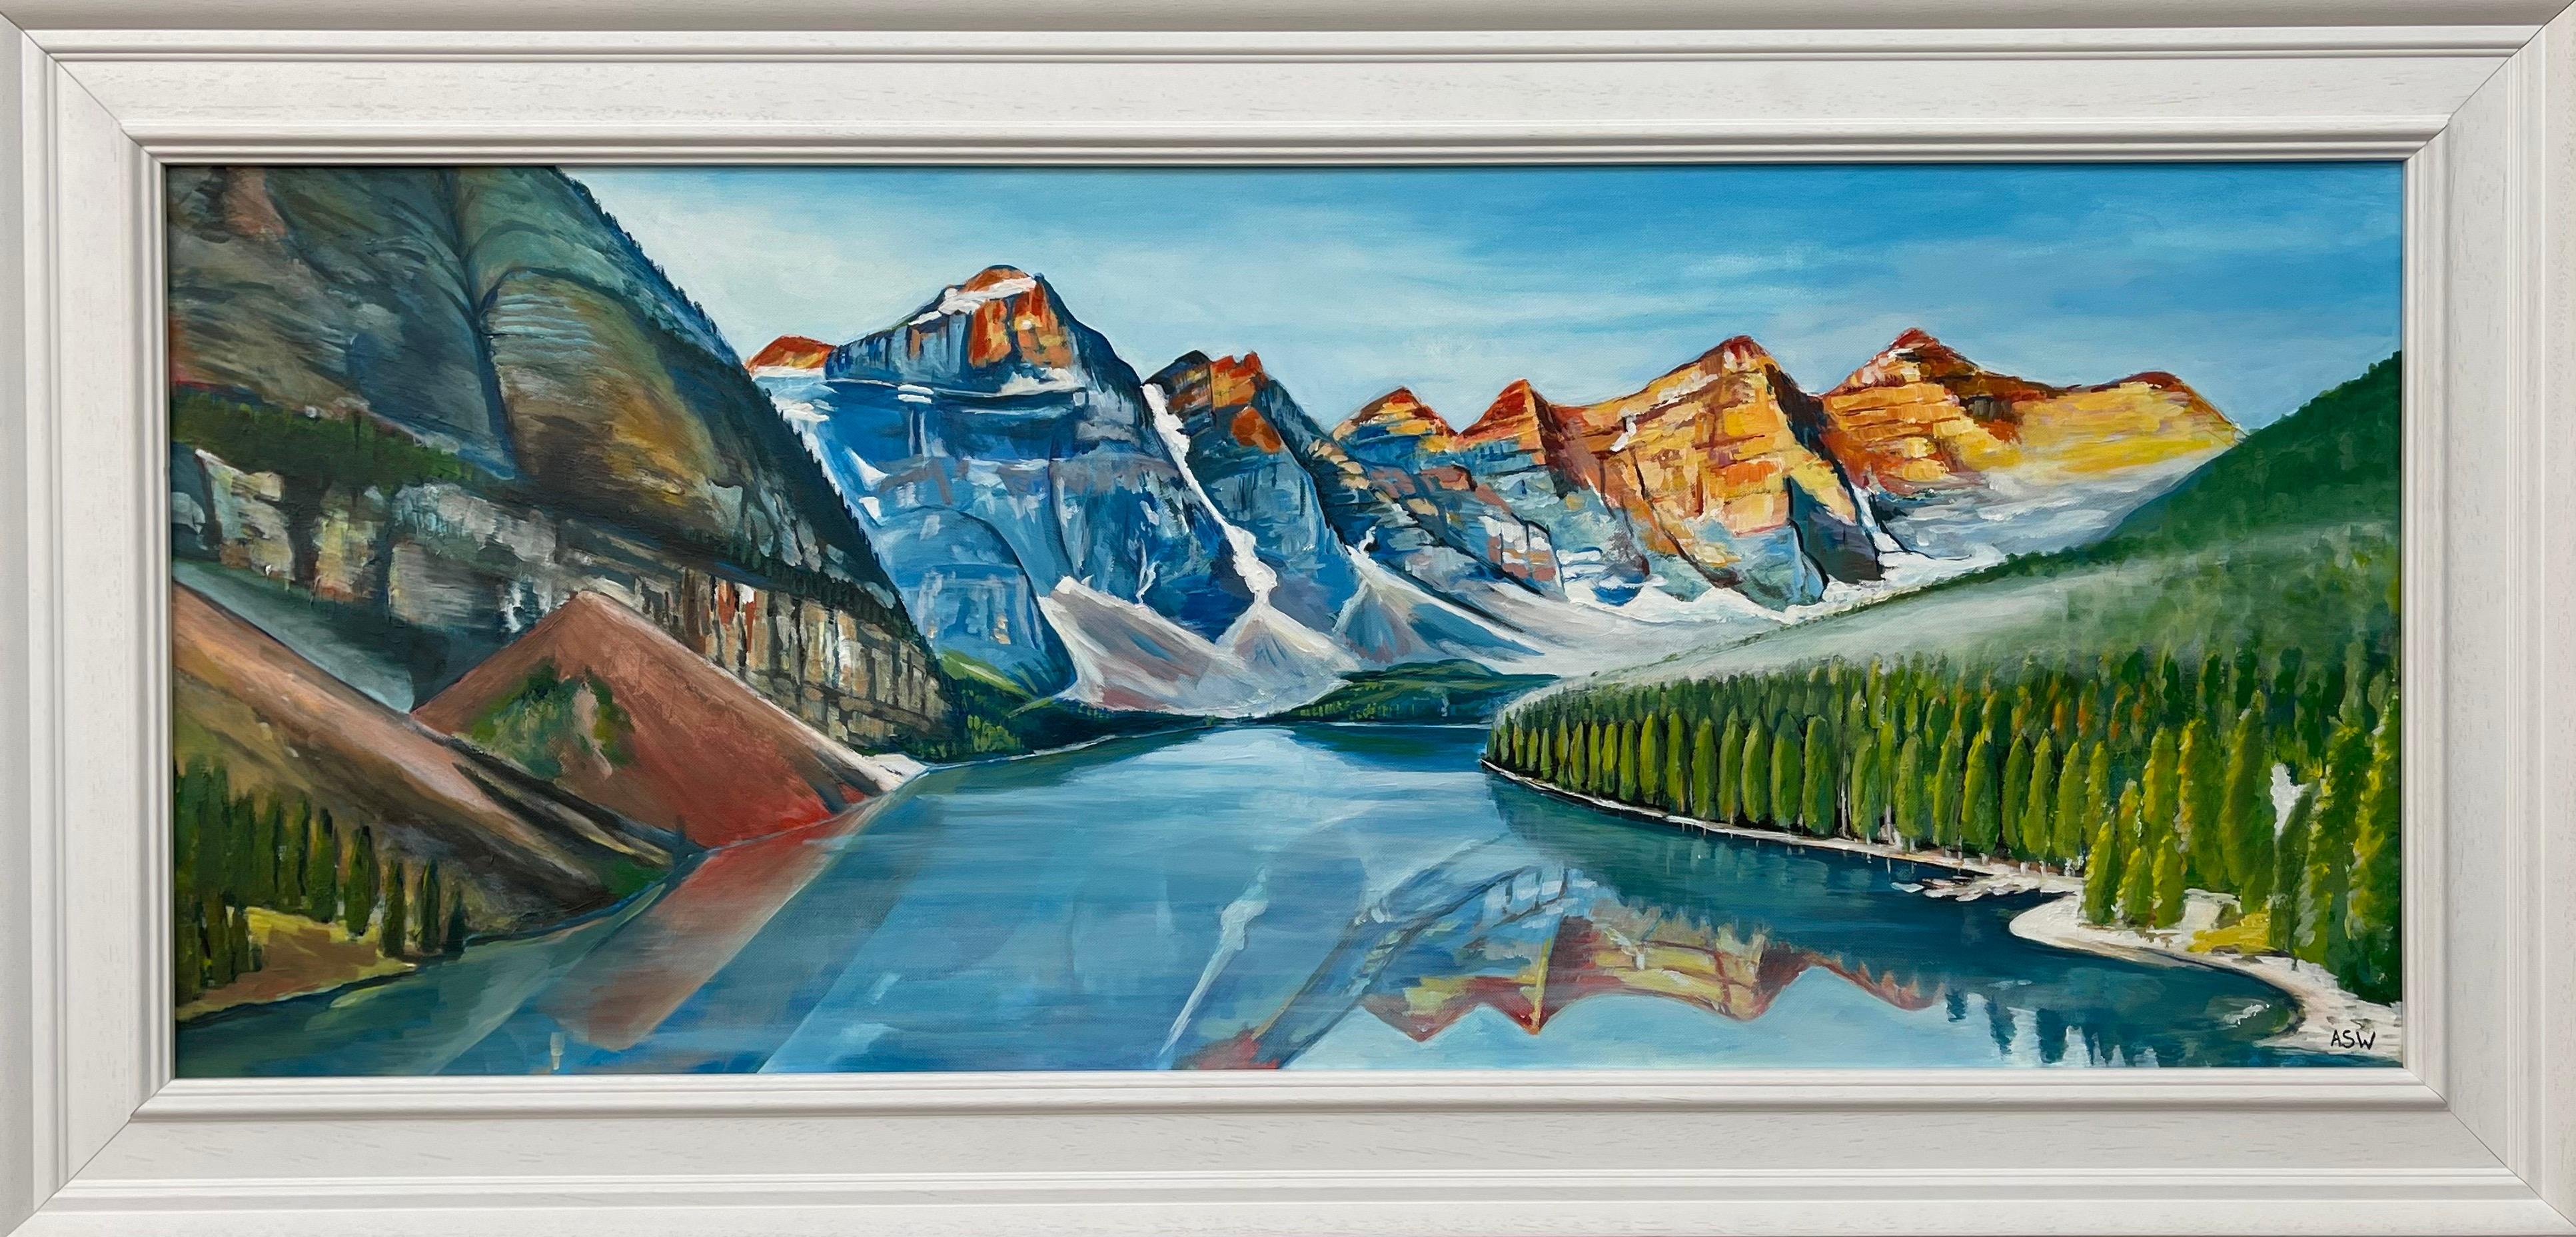 Abstract Painting Angela Wakefield - Peinture de paysage moderne du lac d'Alberta, Canada, par un artiste contemporain